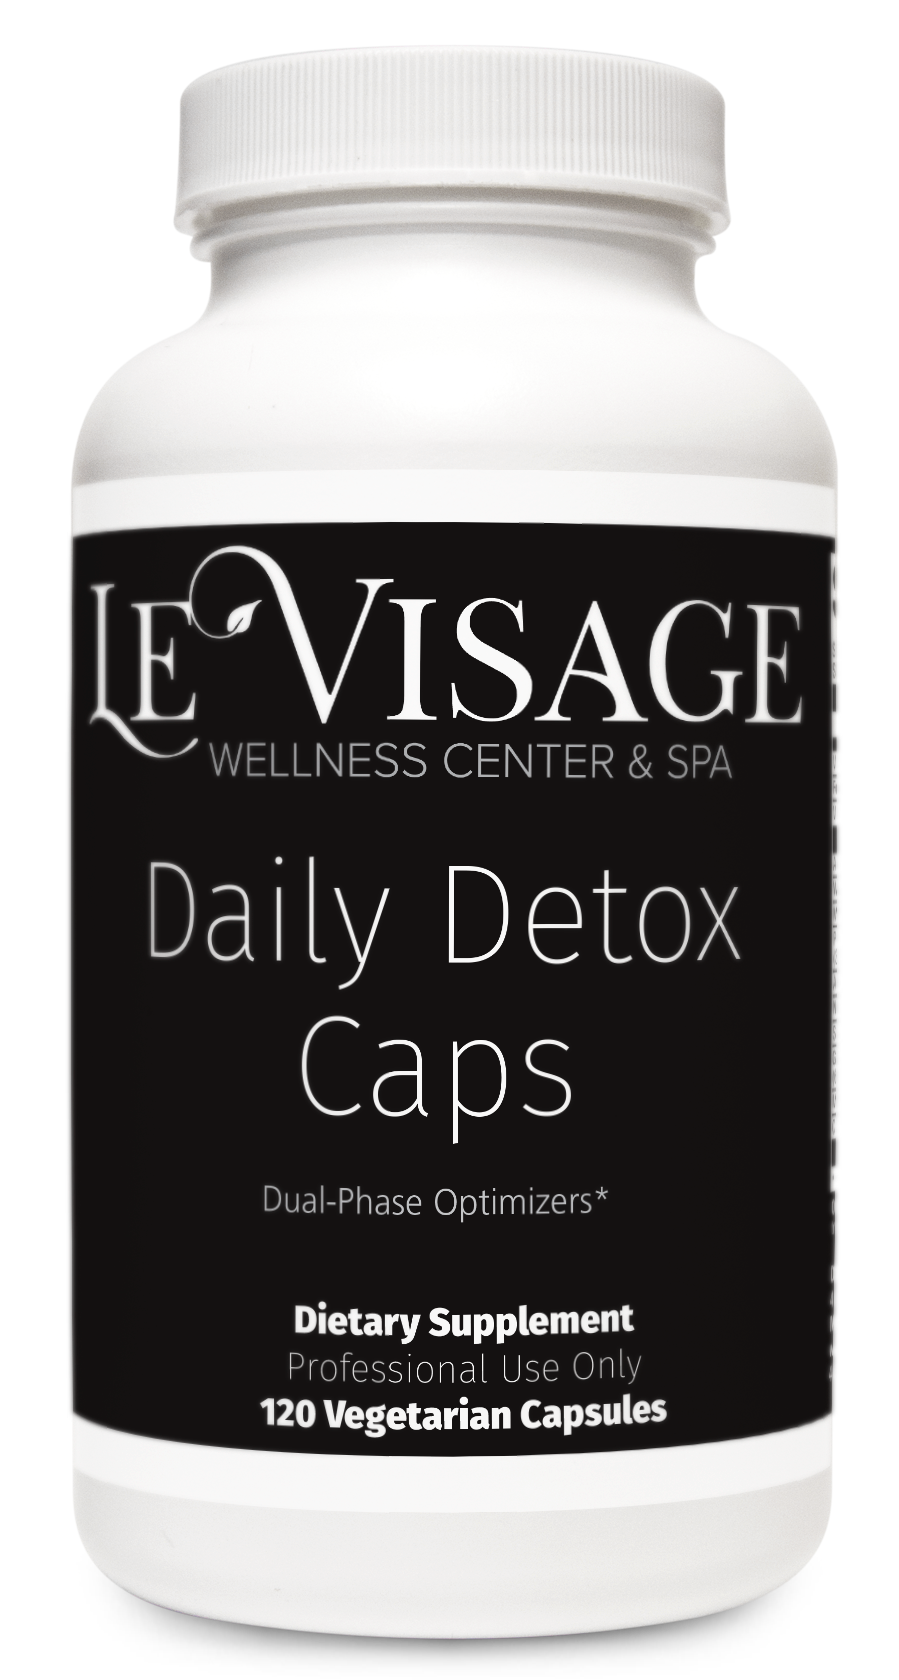 Daily Detox Caps 120c